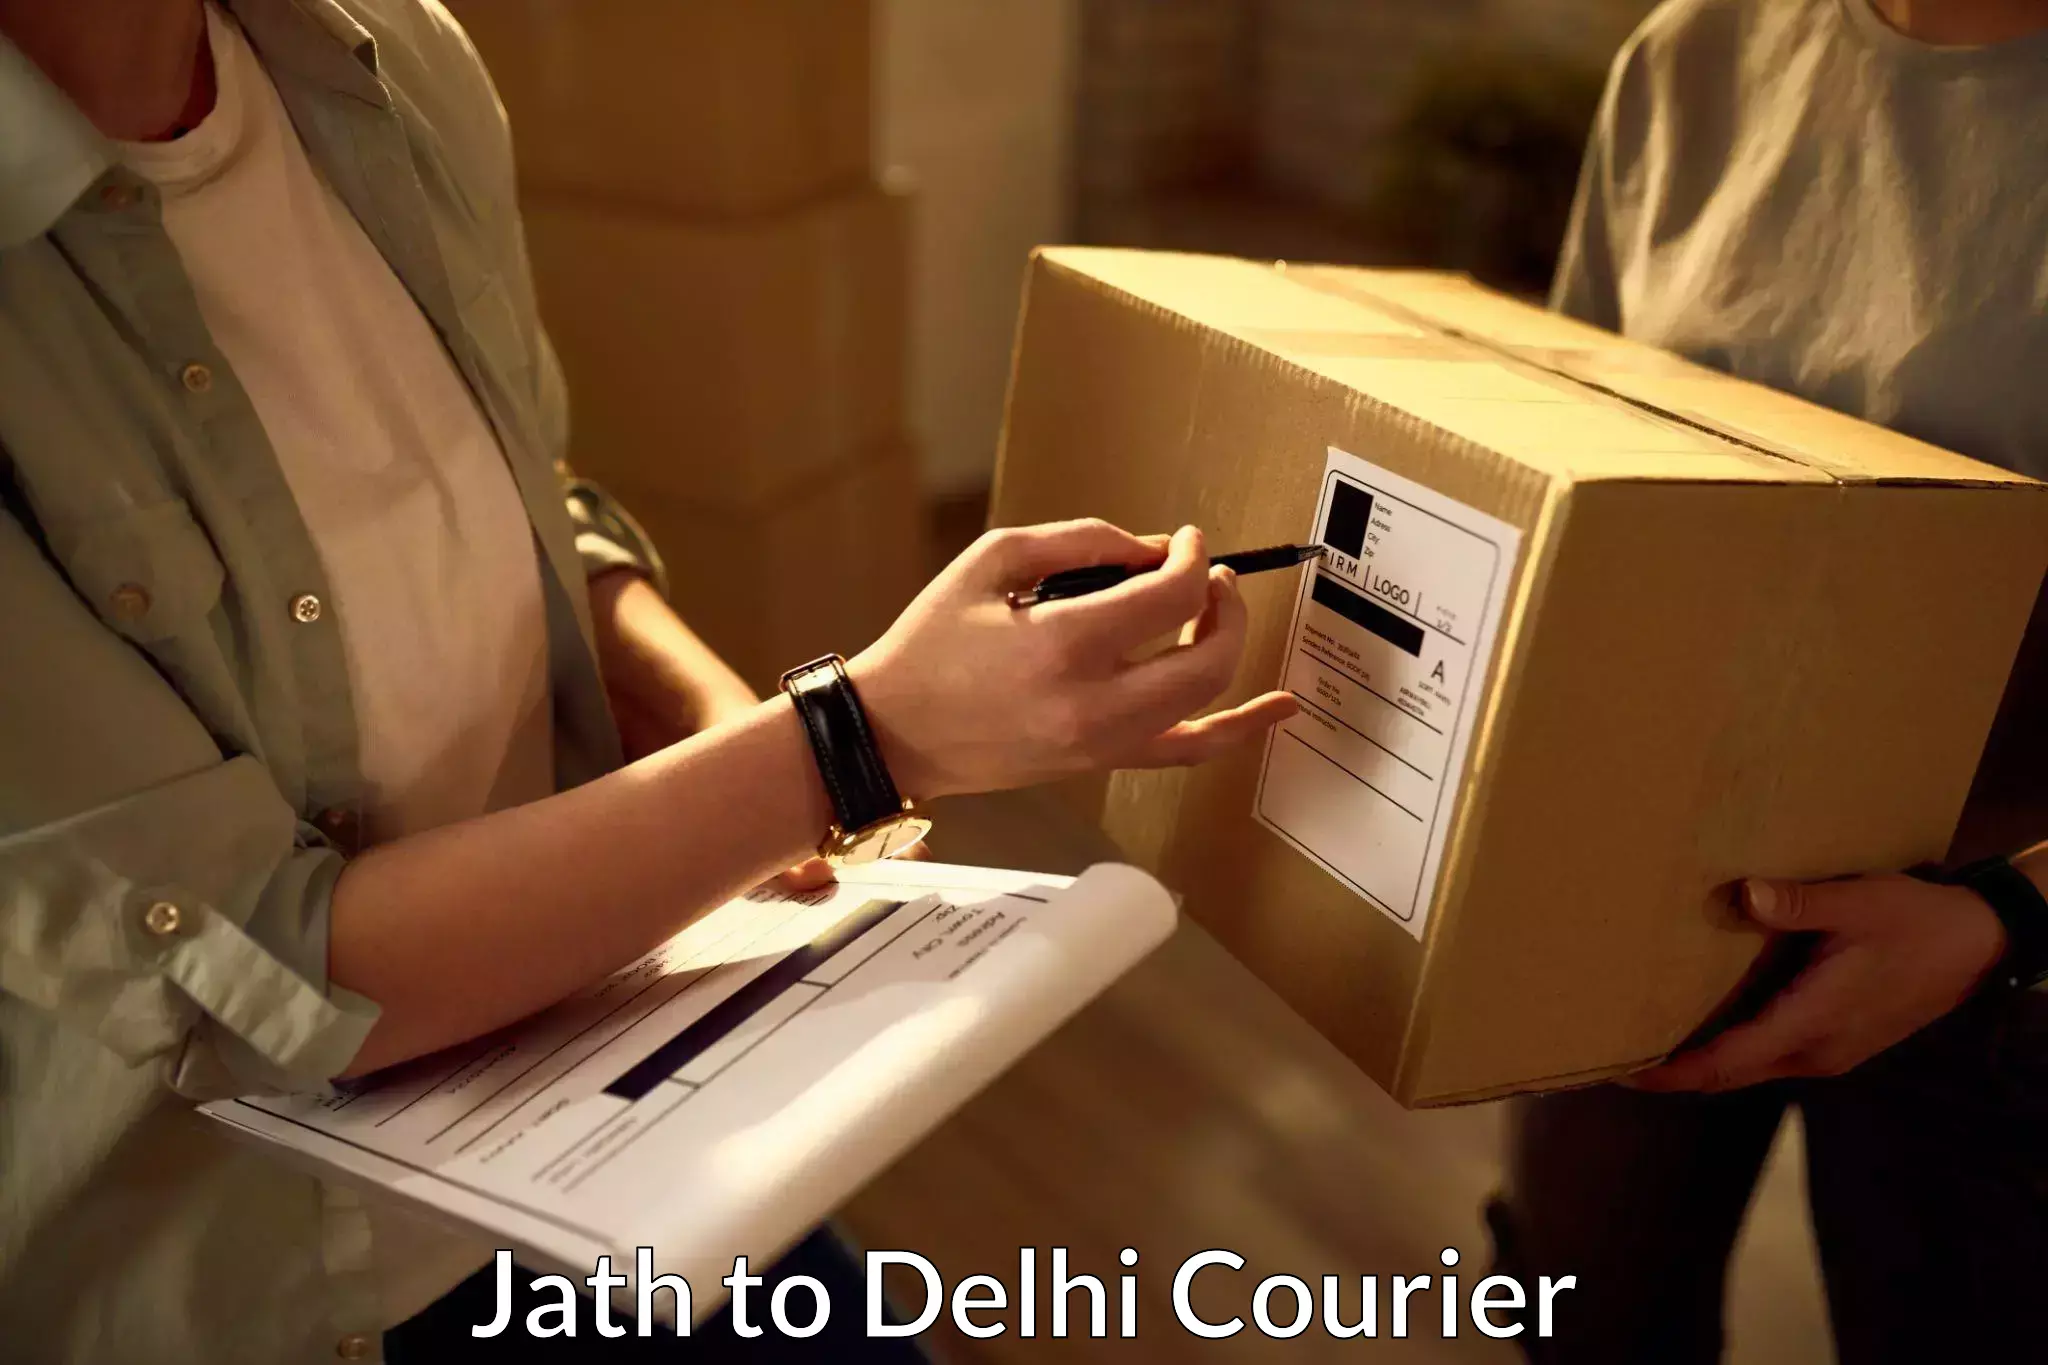 High-capacity parcel service Jath to Kalkaji